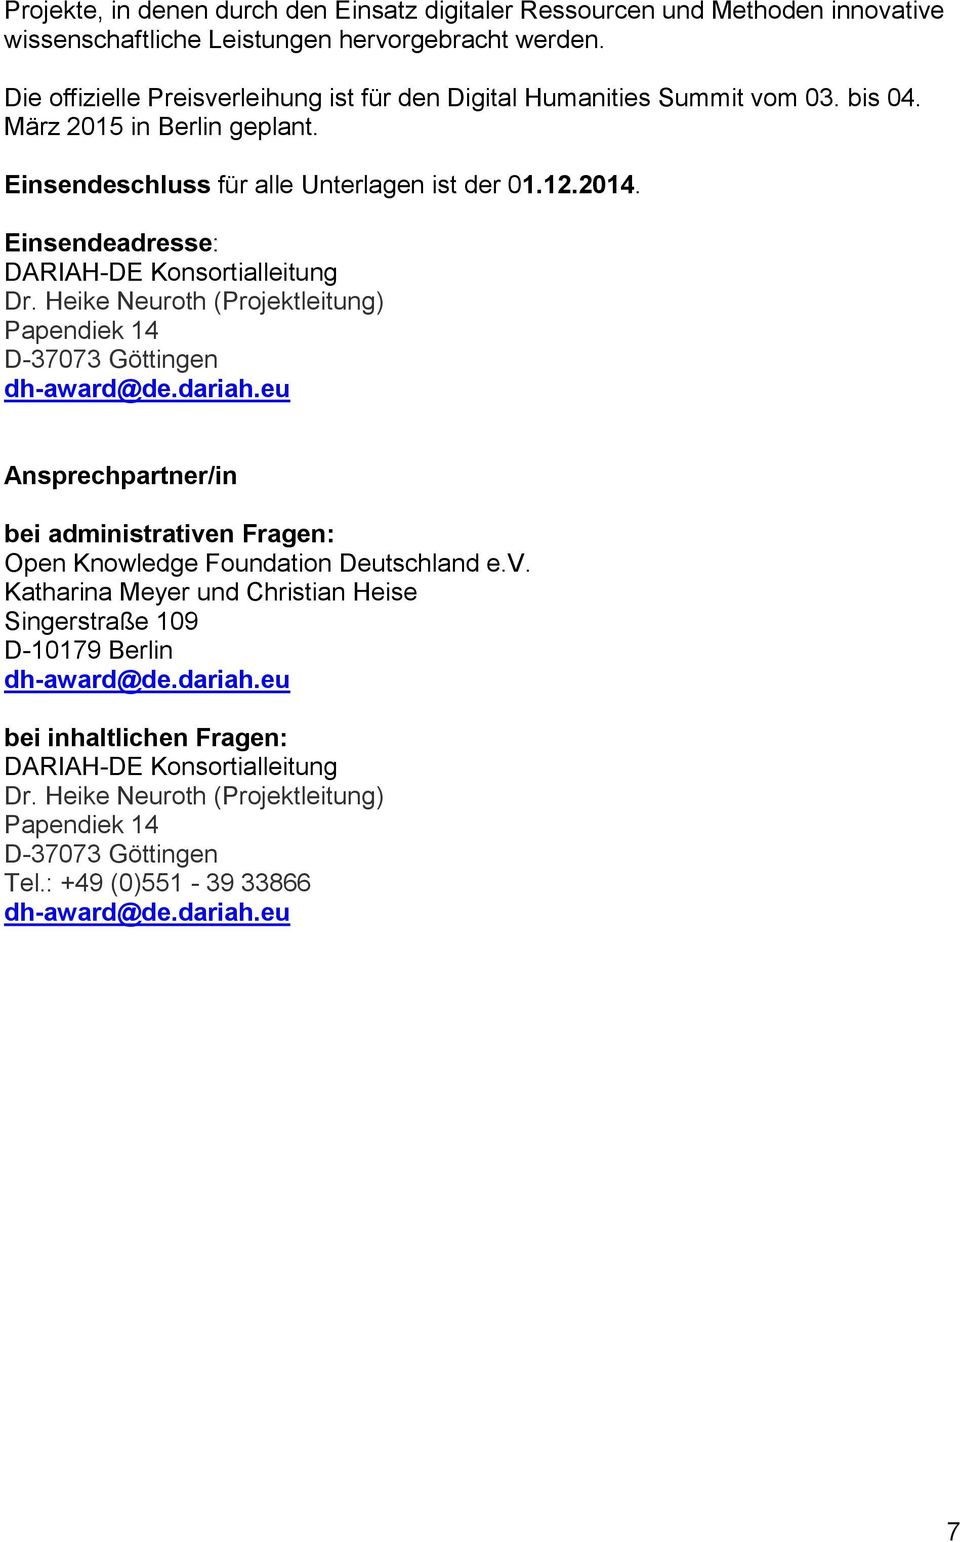 Einsendeadresse: DARIAH-DE Konsortialleitung Dr. Heike Neuroth (Projektleitung) Papendiek 14 D-37073 Göttingen dh-award@de.dariah.